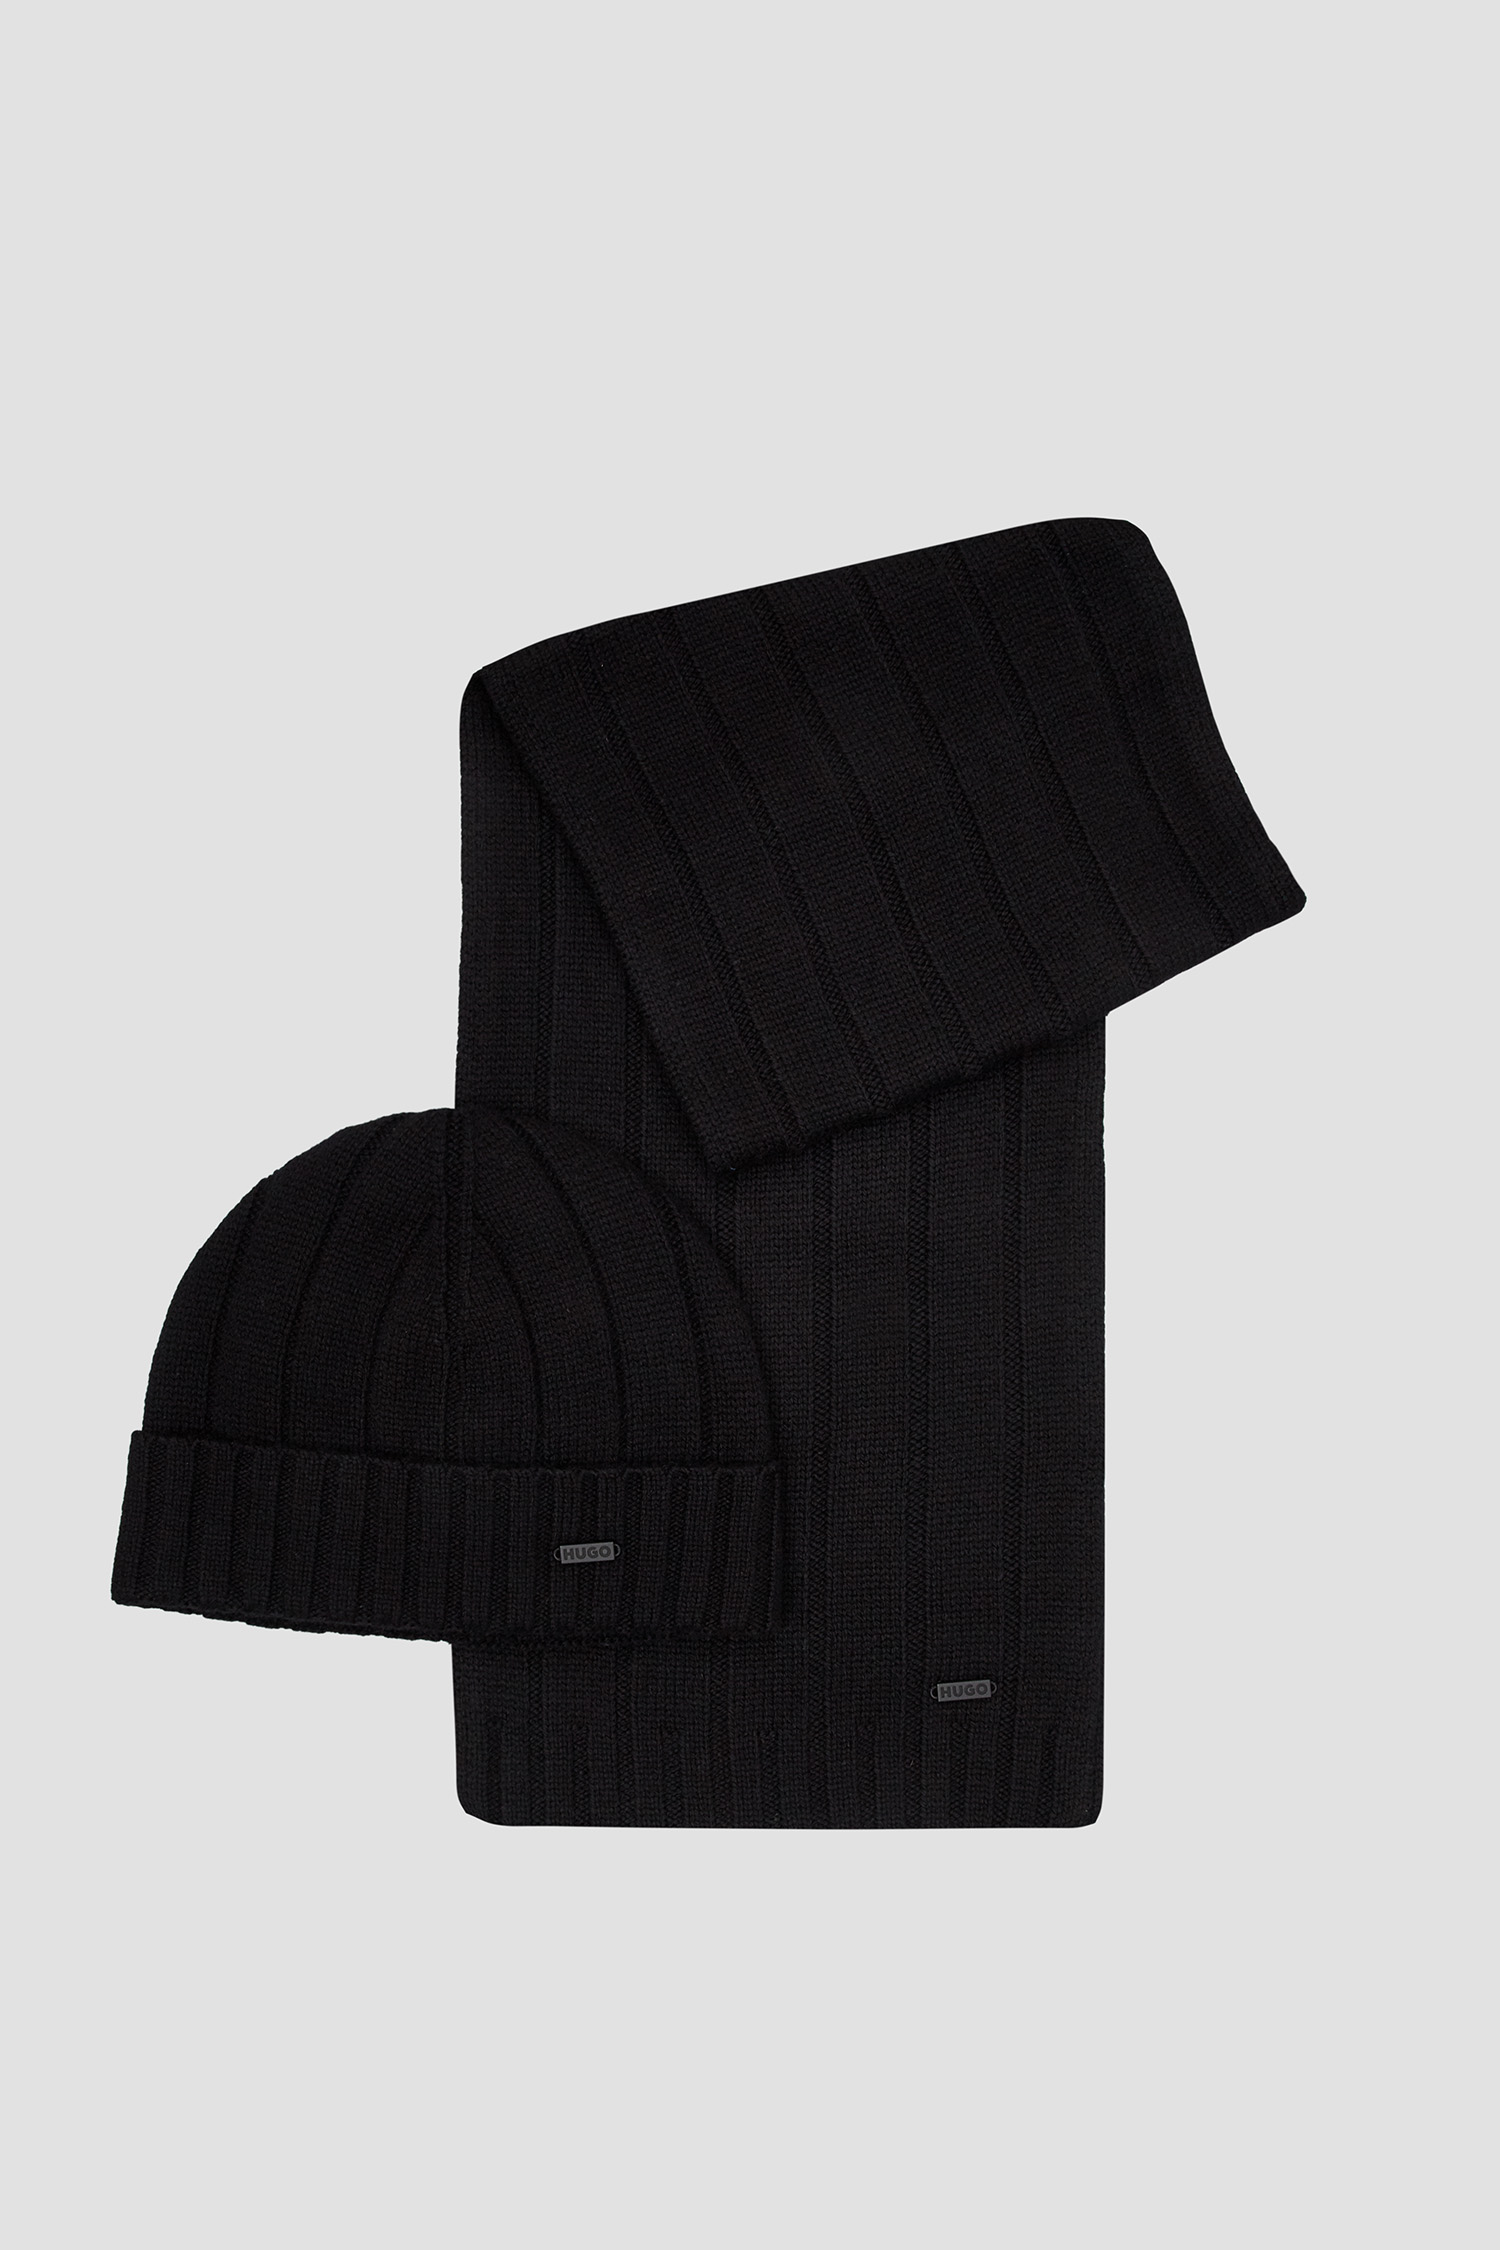 Мужской черный набор аксессуаров (шапка, шарф) 1